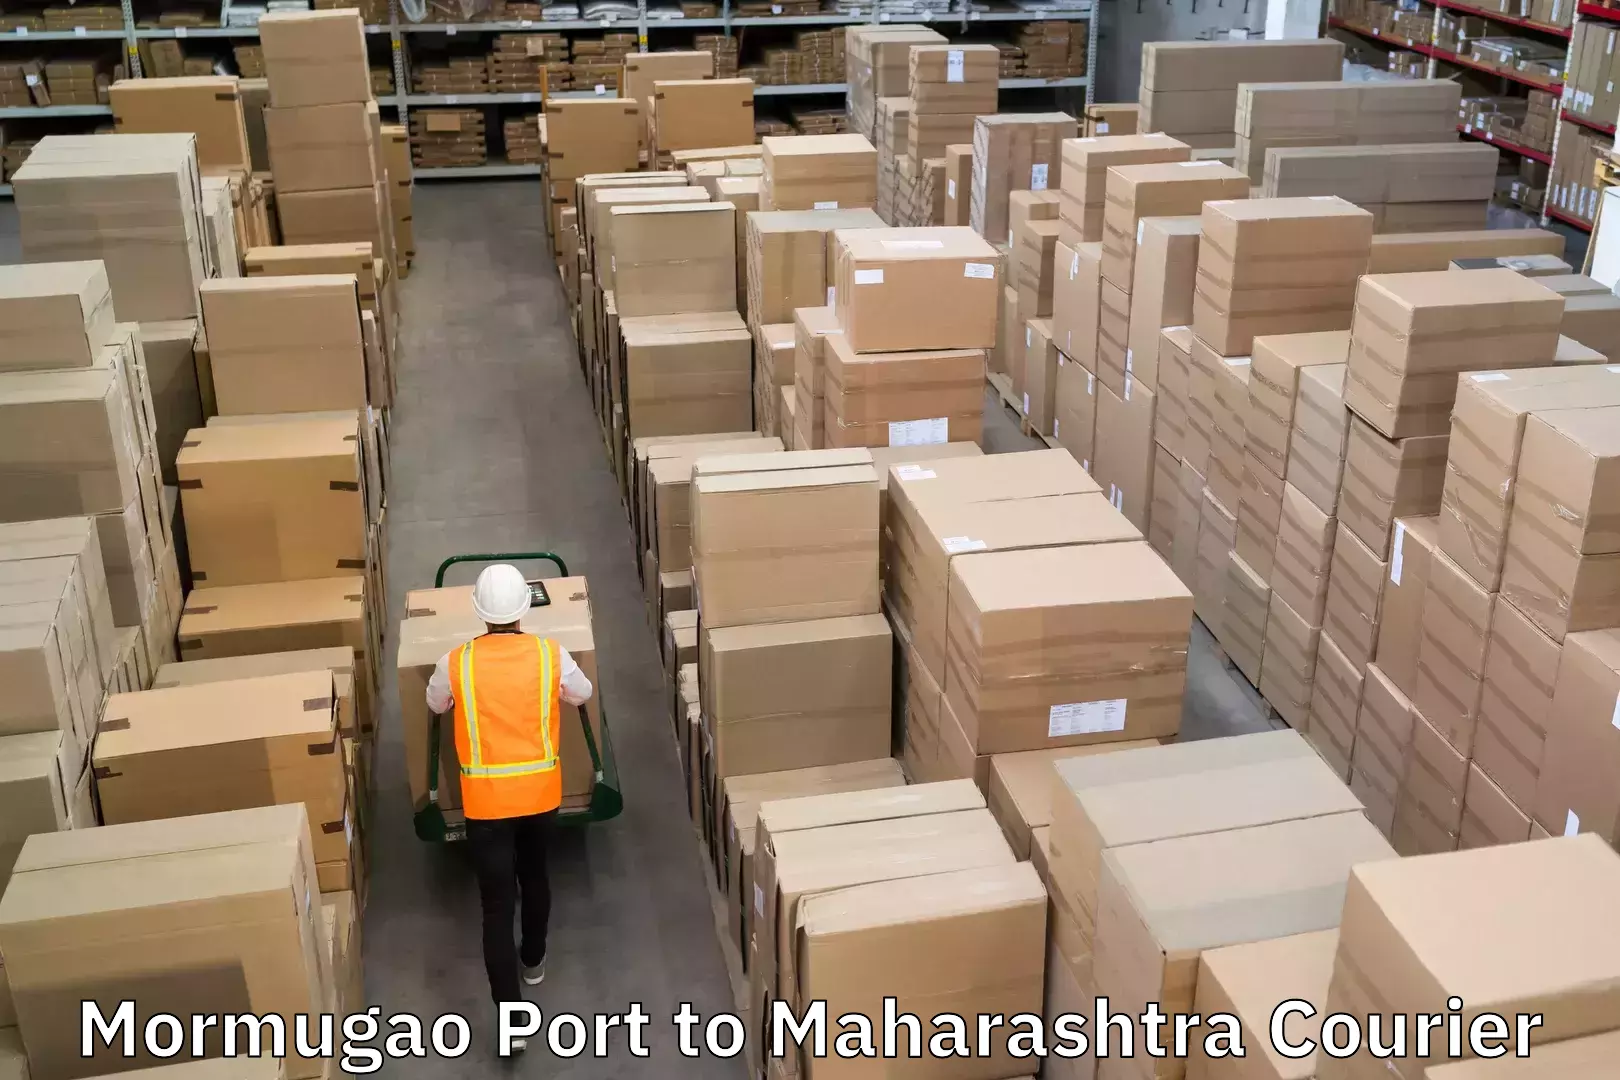 24/7 courier service Mormugao Port to Maharashtra